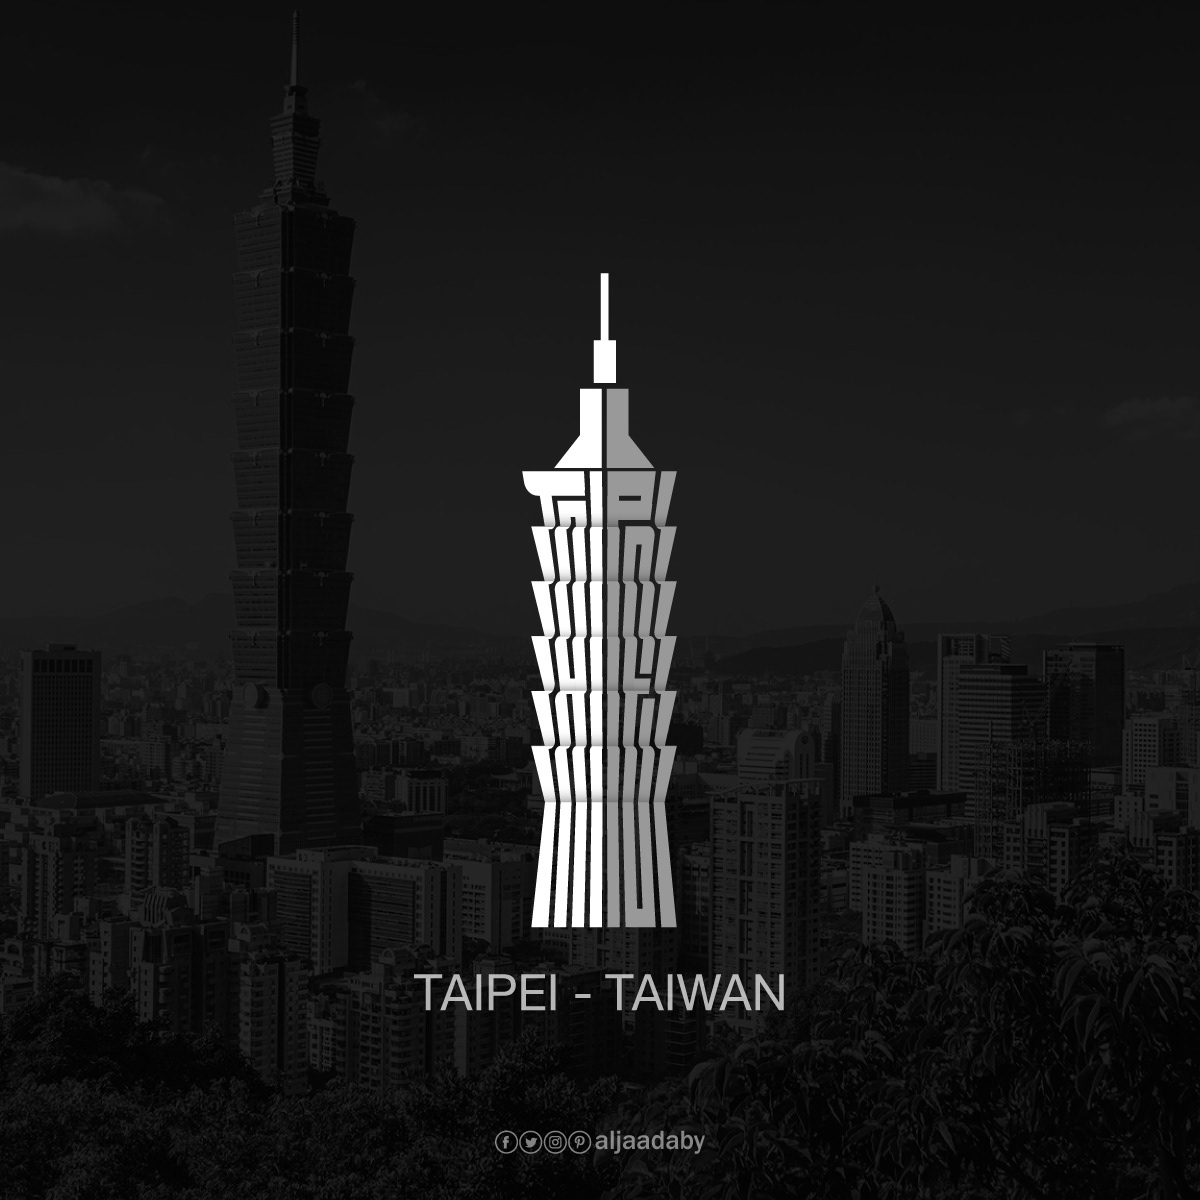 Typographic city logos based on their famous landmarks - Taipei